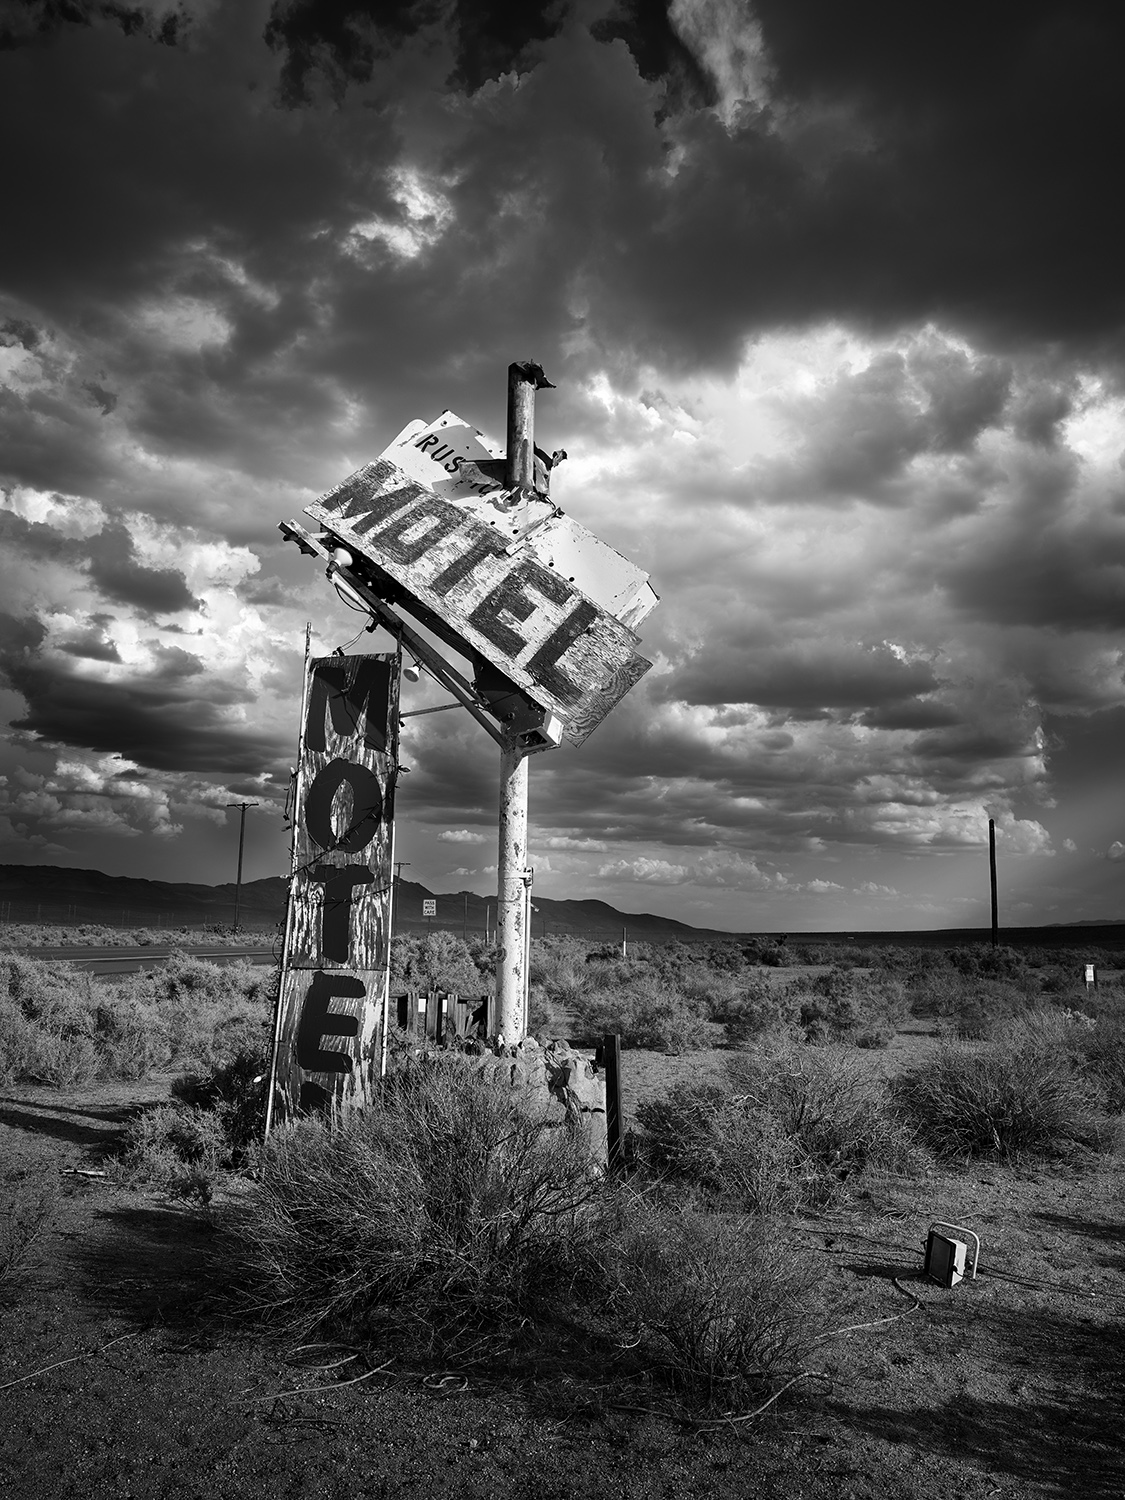 Black and white fine art photograph of an urban desert scene.